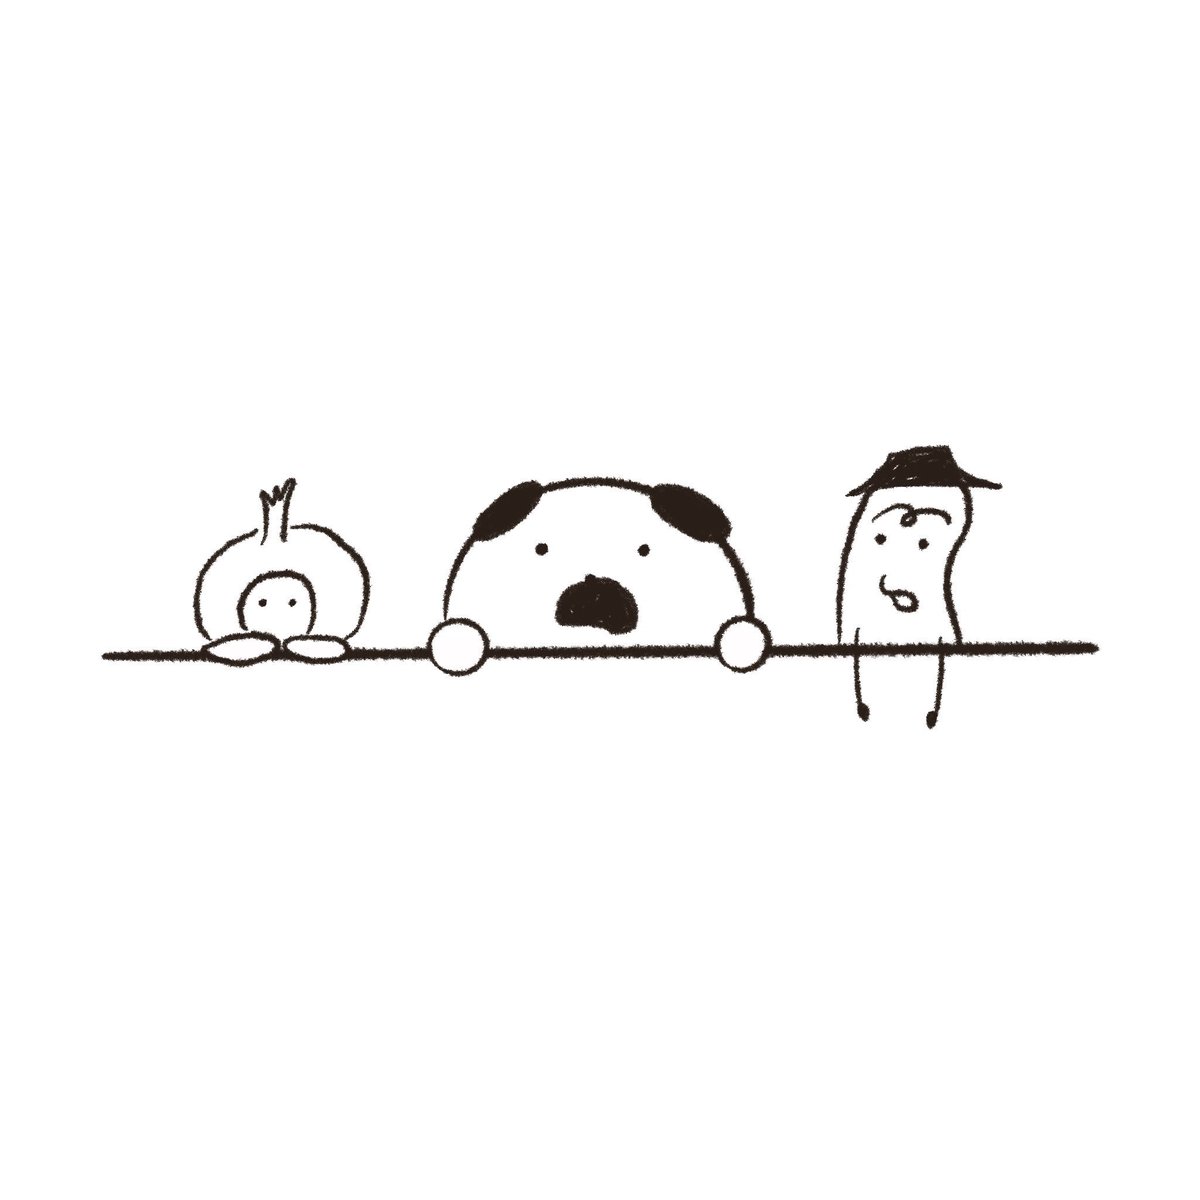 Marubooo まるぼー على تويتر じー 絵描きさんと繋がりたい イラスト好きな人と繋がりたい Pug パグ イラスト マンガ まぬけん 日常 毎日 犬 Illustration Illustrator Mydrawing 可愛い かわいい ゆるい いぬ キャラクター Dog リラックス